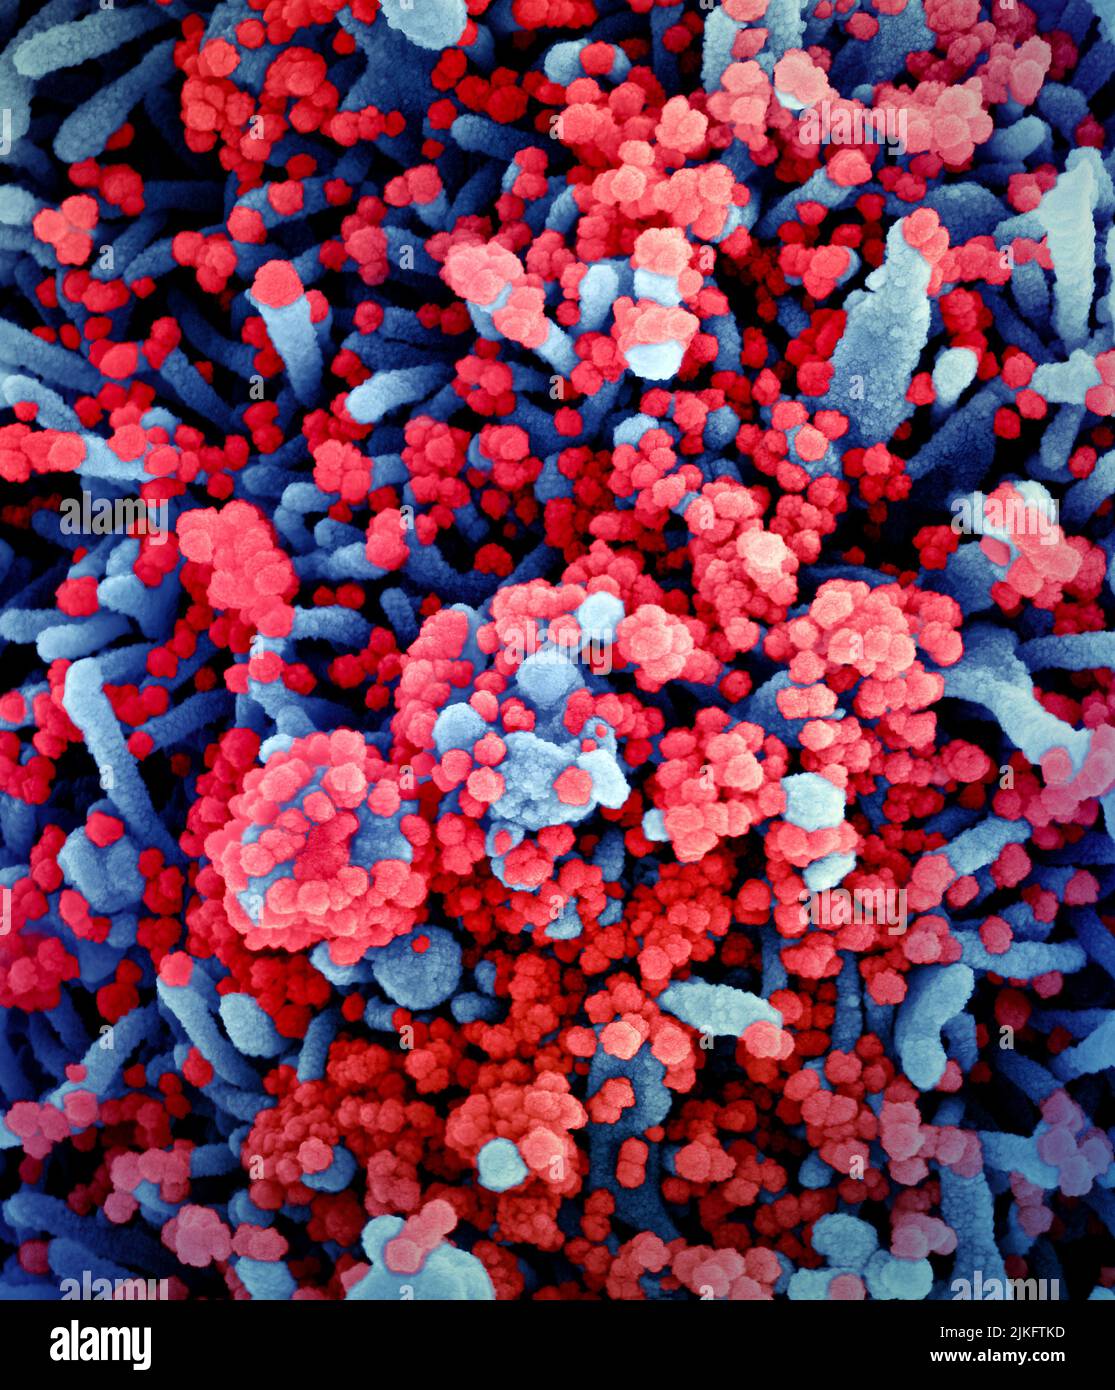 Micrografia elettronica a scansione colorata di una cellula (blu) fortemente infettata con particelle di virus SARS-COV-2 (rosso), isolate da un campione di paziente. Immagine richiesta dal NIAID Integrated Research Facility (IRF) a Fort Detrick, Maryland. Foto Stock